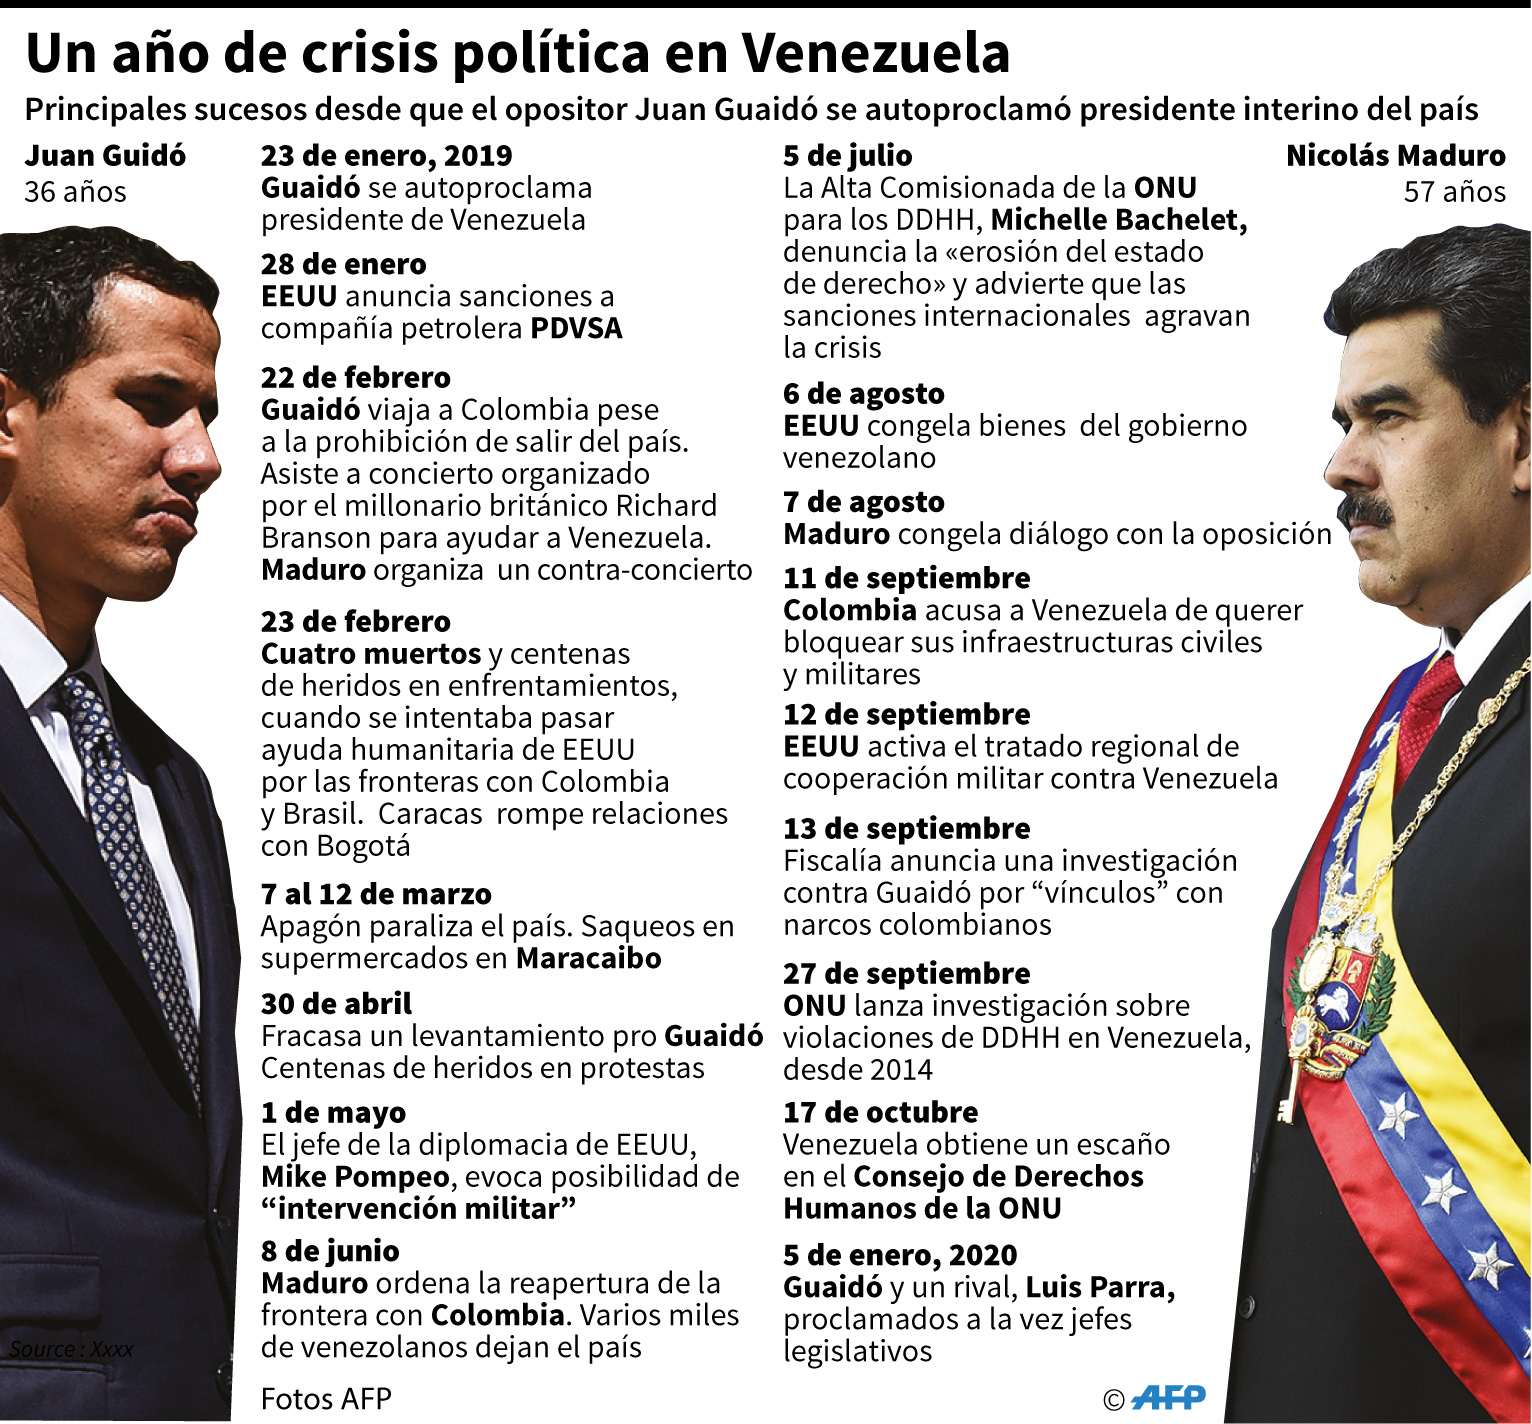 Principales sucesos desde que Juan Guaidó se proclamó presidente interino de Venezuela. (AFP)